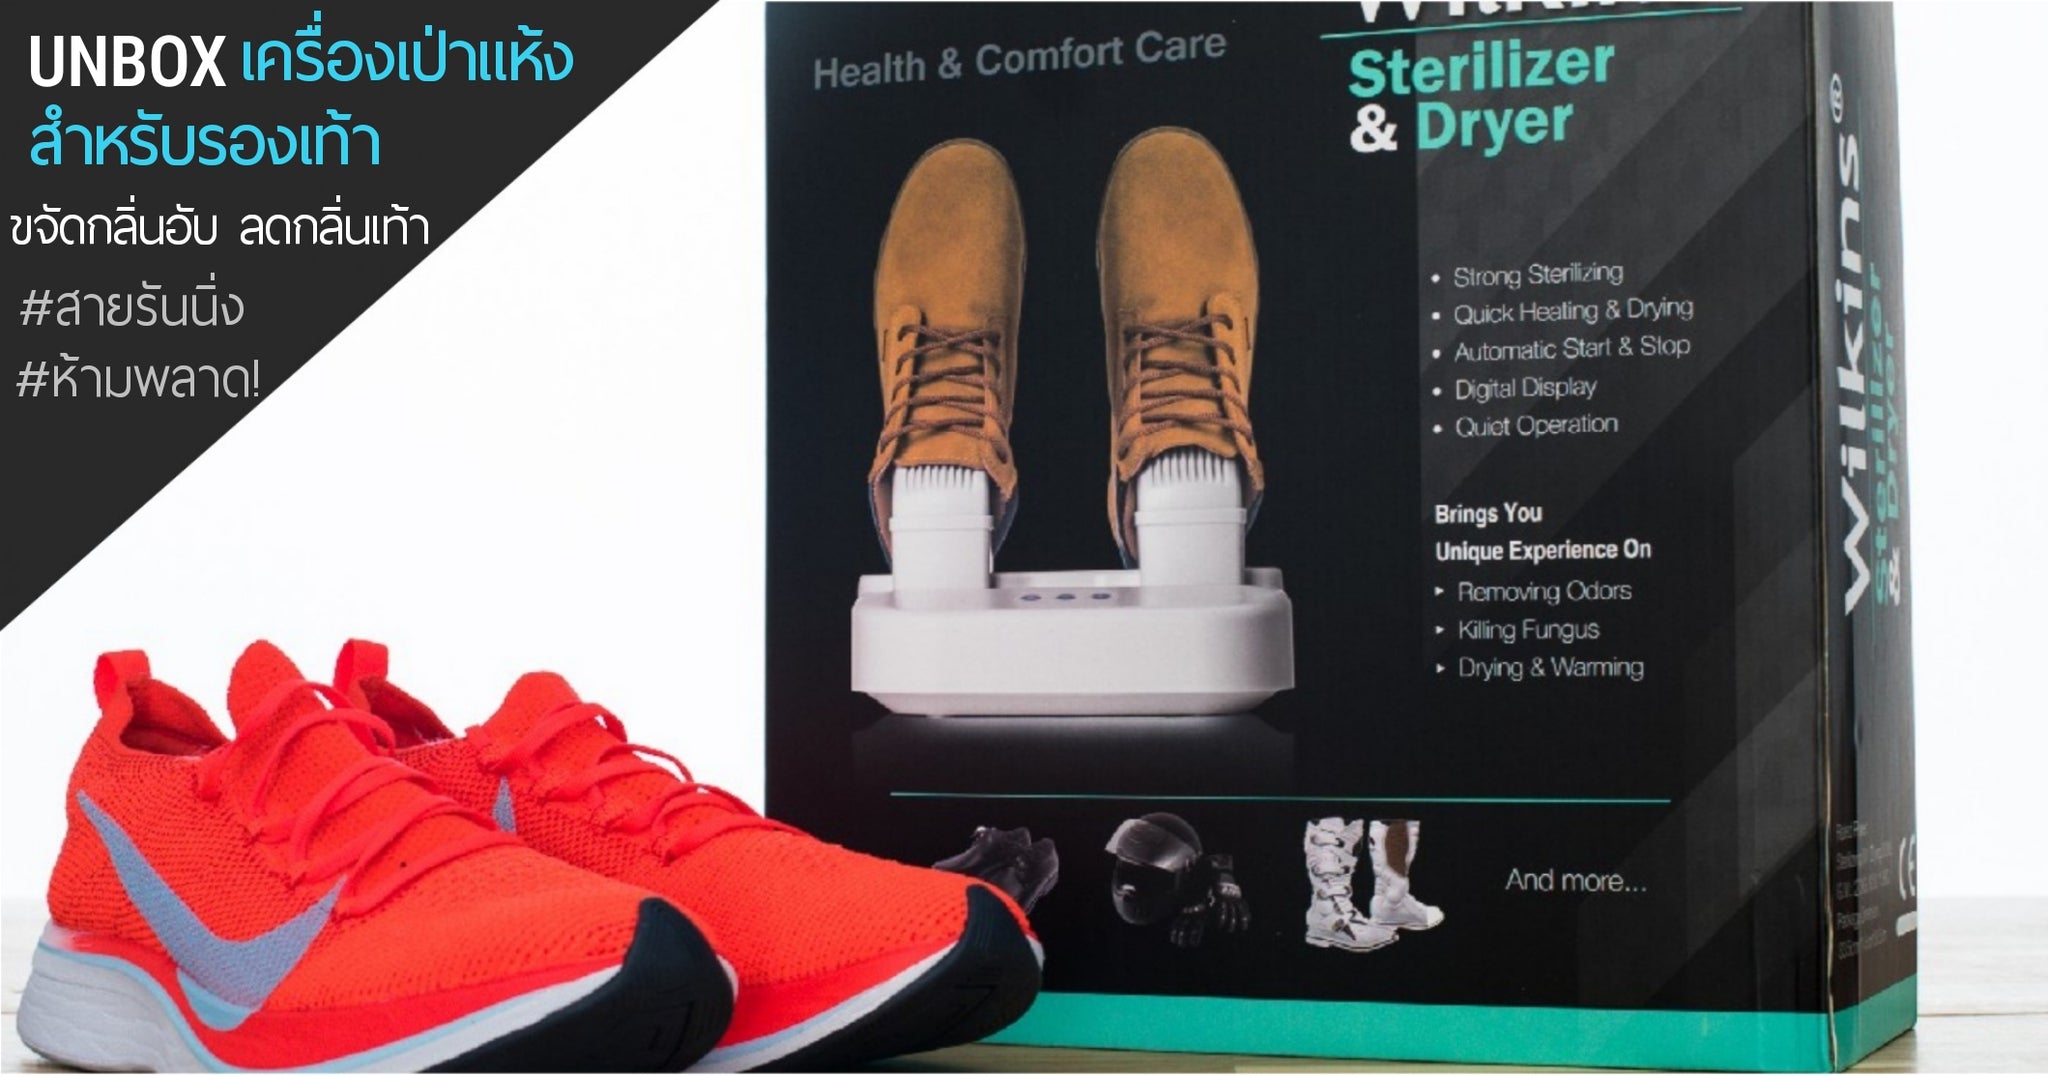 แกะกล่องรีวิว Wilkins Sterilizer เครื่องเป่าแห้งรองเท้าที่ทุกคนต้องมีไว้ติดบ้าน (How to use Wilkins Sterilizer)